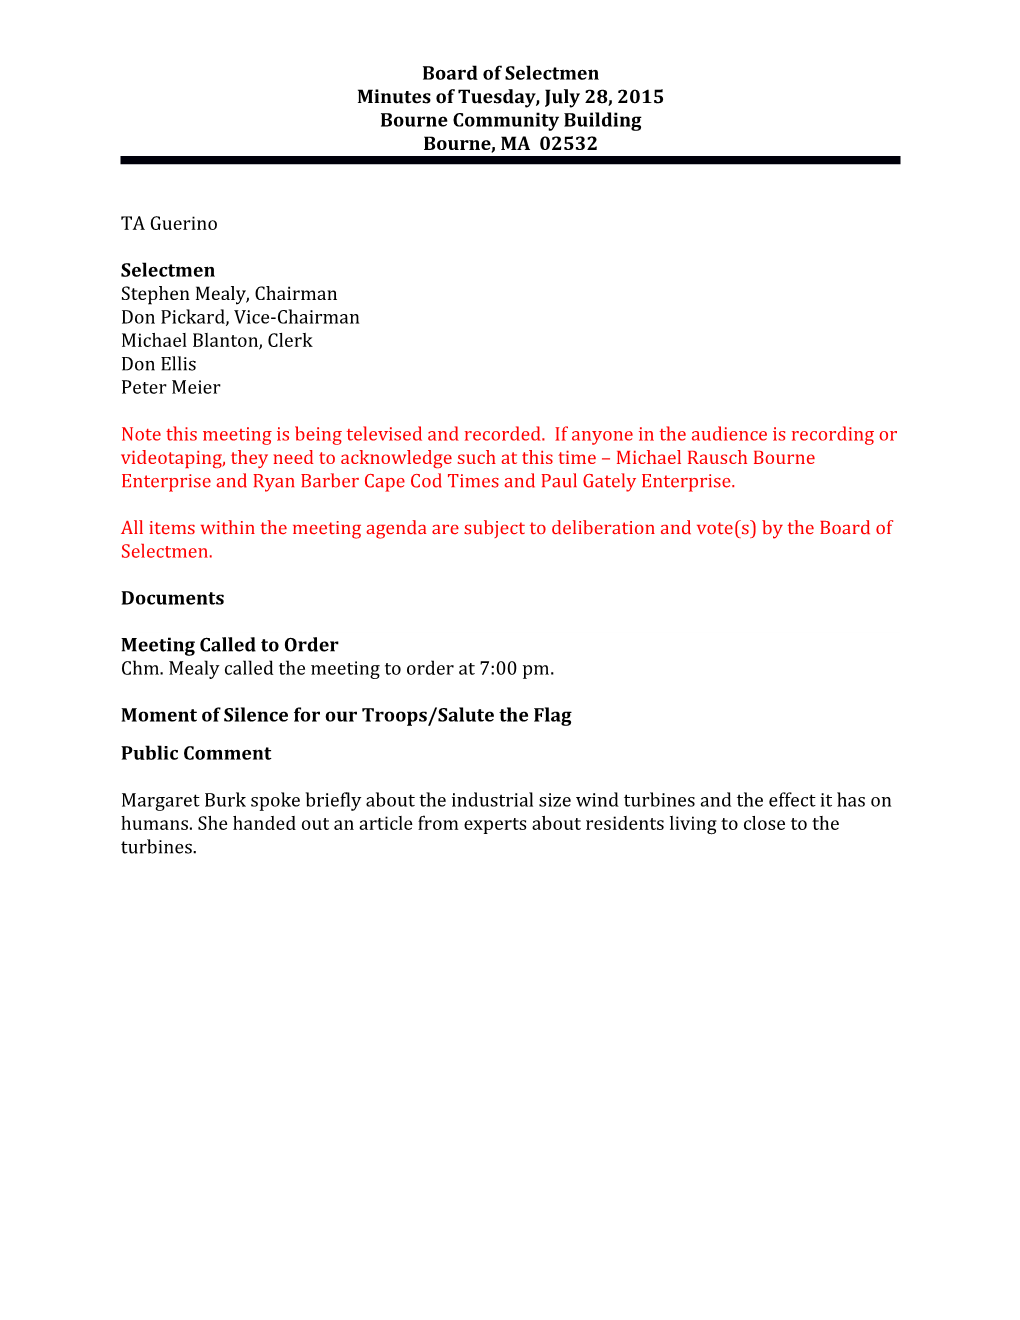 Board of Selectmen S Minutes July 28, 2015